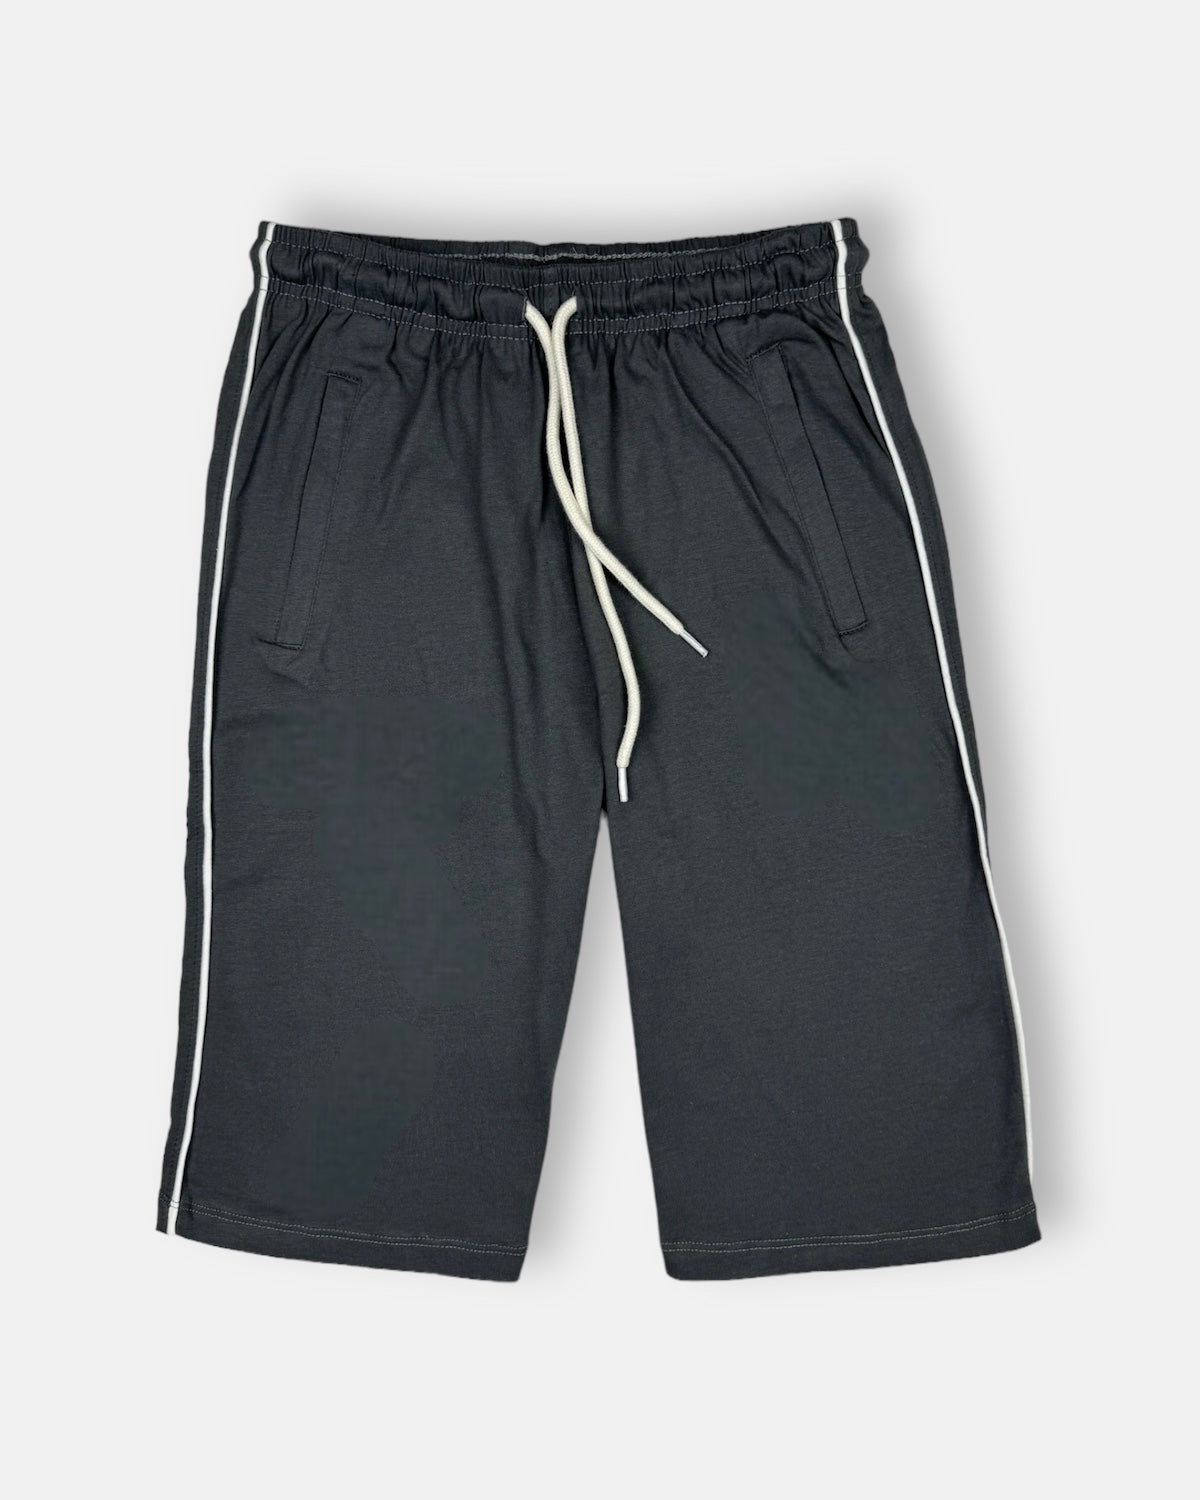 BRSHKA Premium Cotton 3Quater Shorts (Dark Grey)